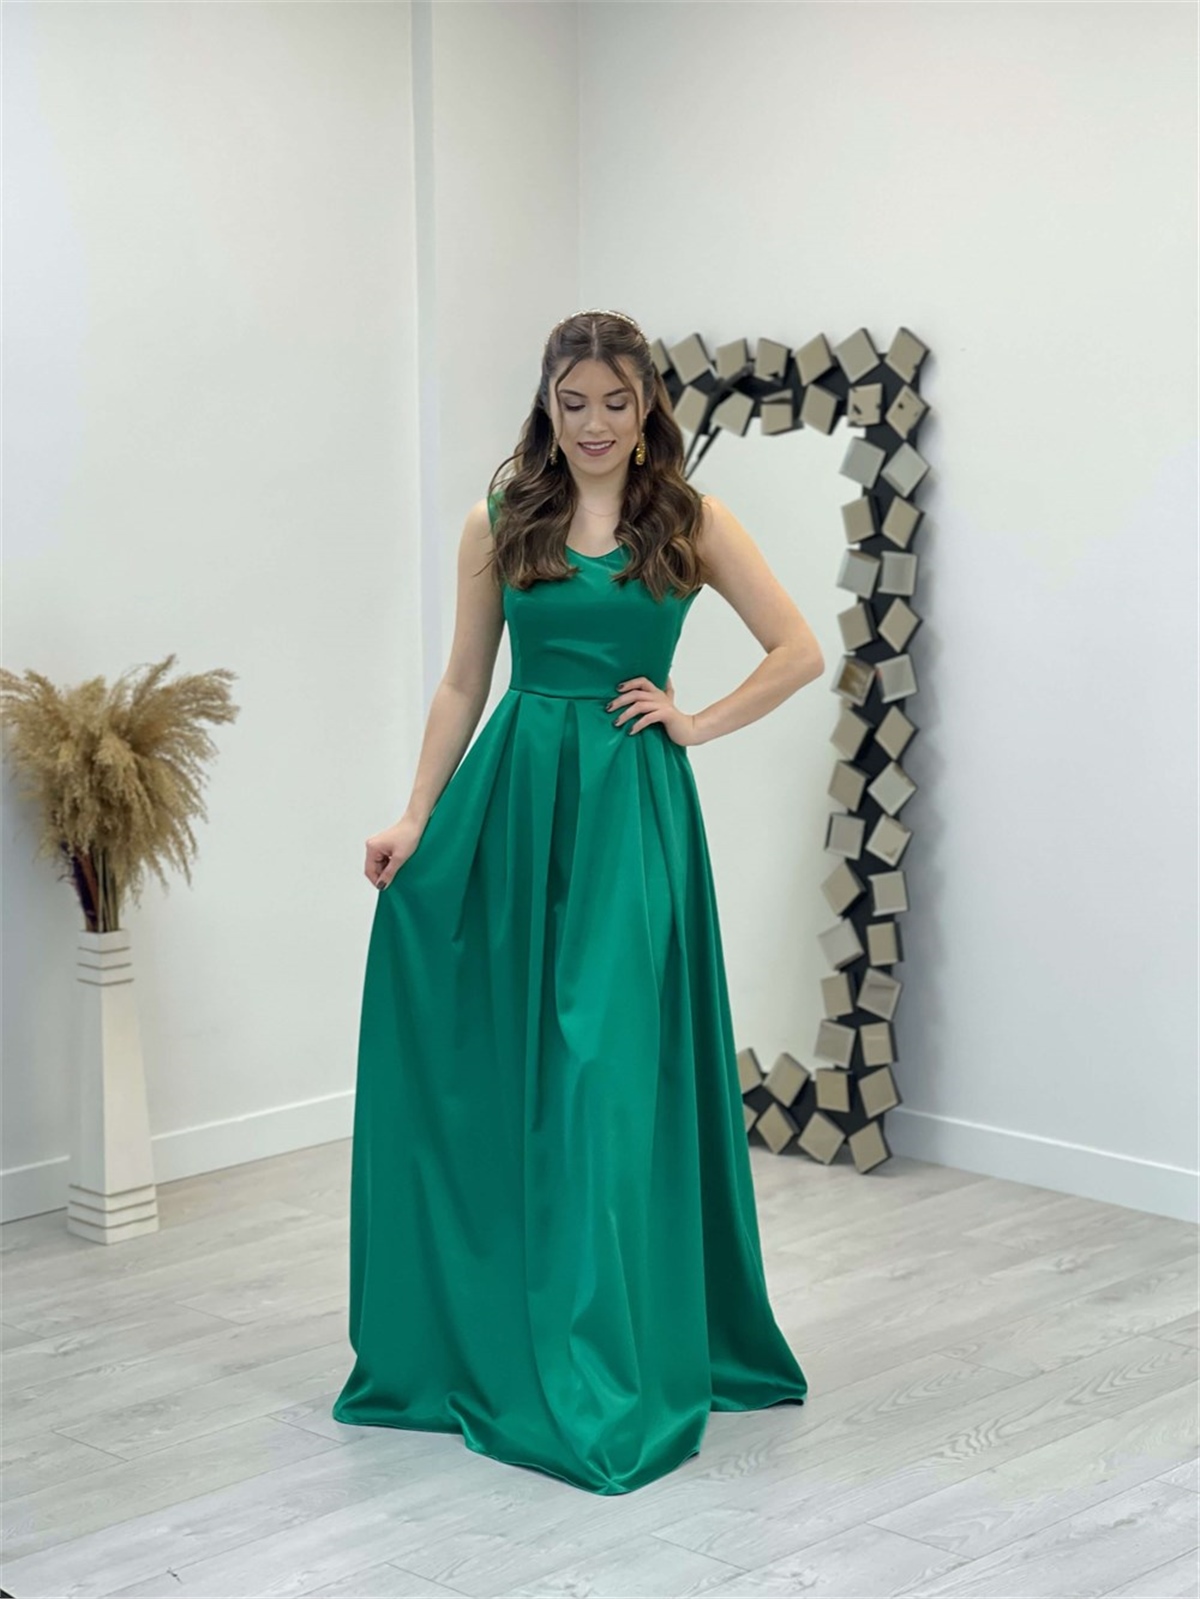 İthal Saten Abiye Elbise - Zümrüt Yeşil | Giyim Masalı